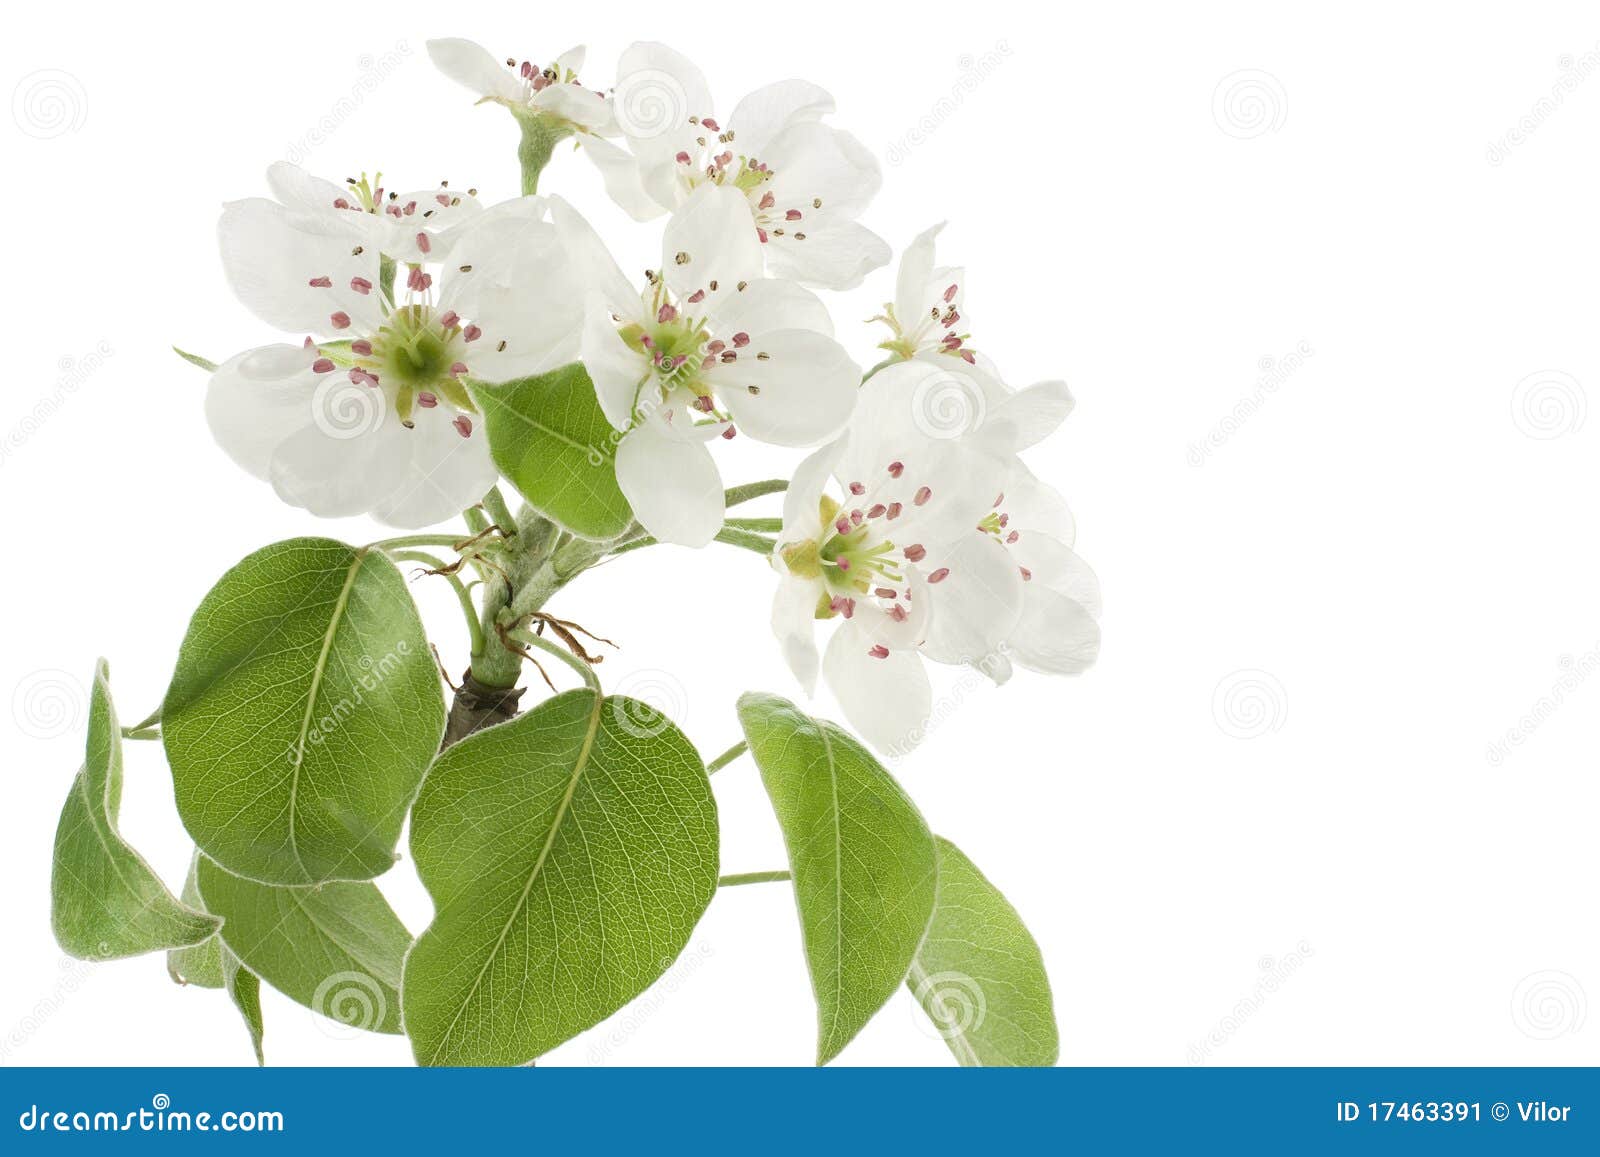 白花白蕾美丽开花梨树枝 库存图片. 图片 包括有 花瓣, 生长, 工厂, 空白, 果子, 花卉, 绿色 - 187361165